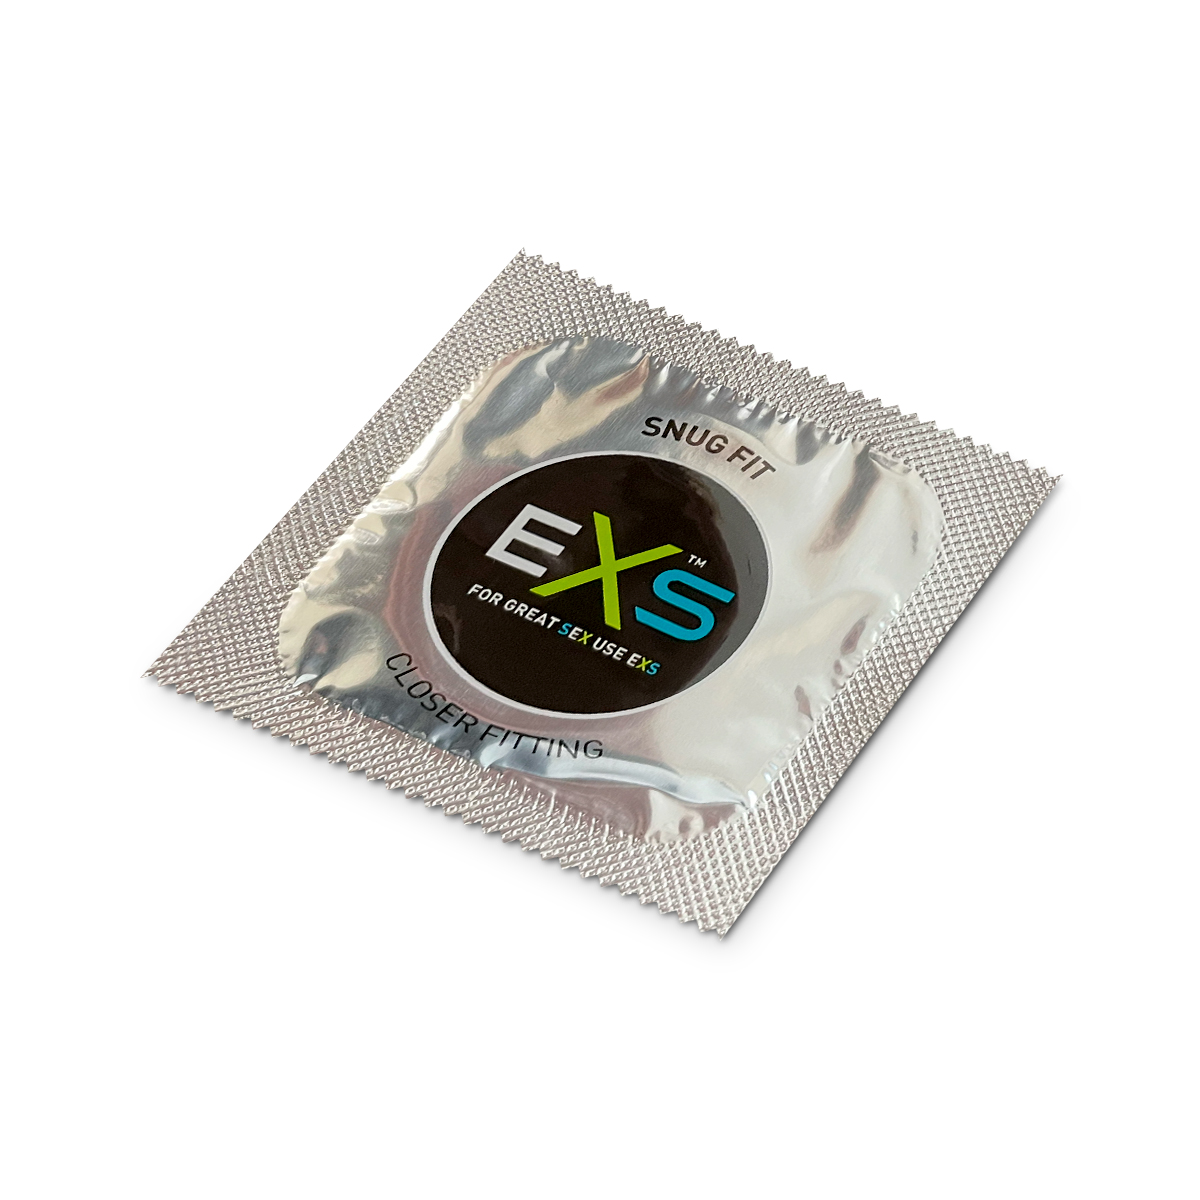 EXS Snug Fit Condoms